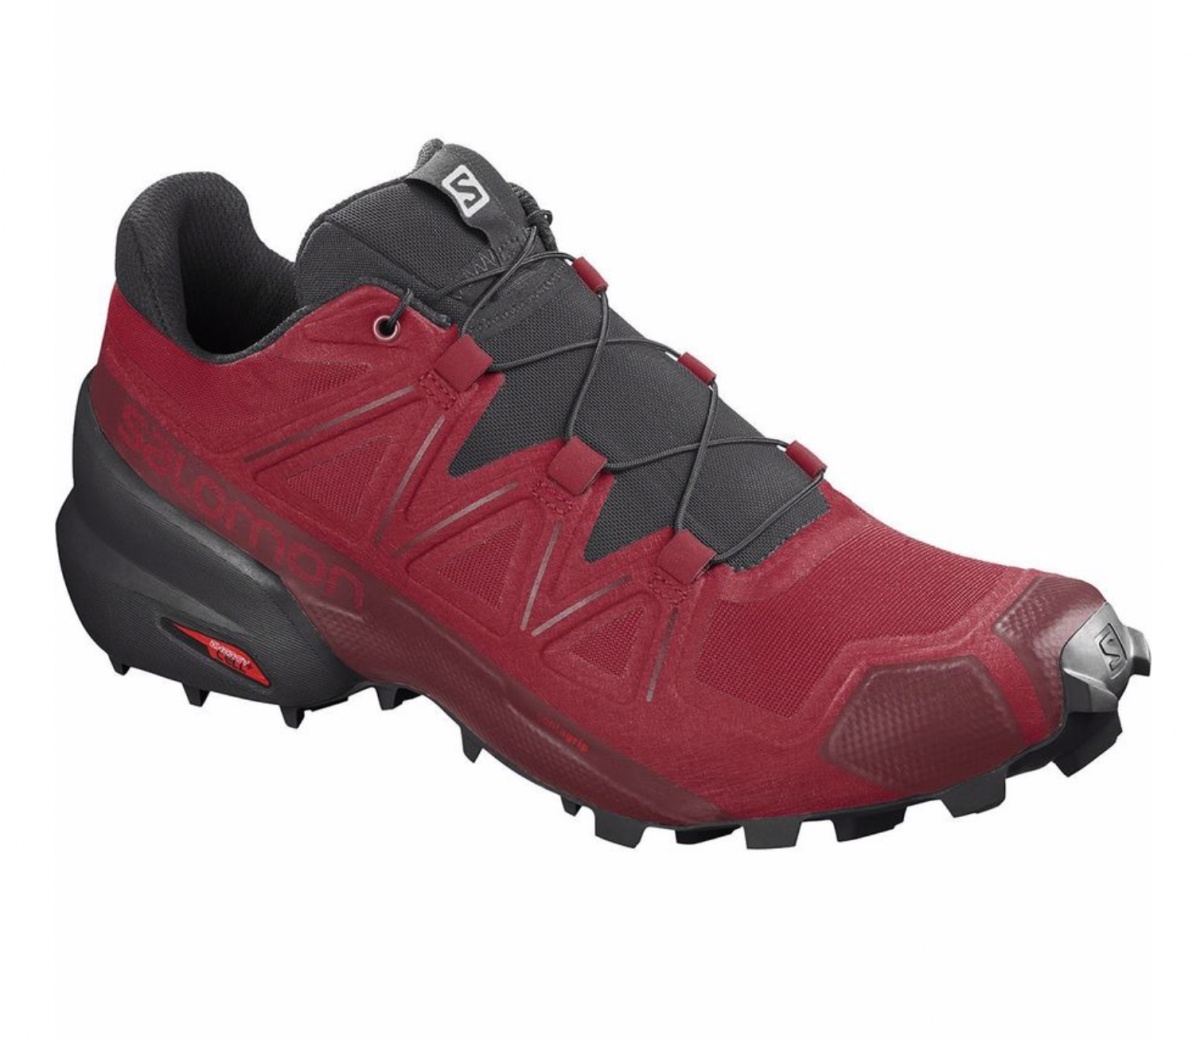 Salomon, Speedcross 5 Men's Trail Running Shoe, Black/Black